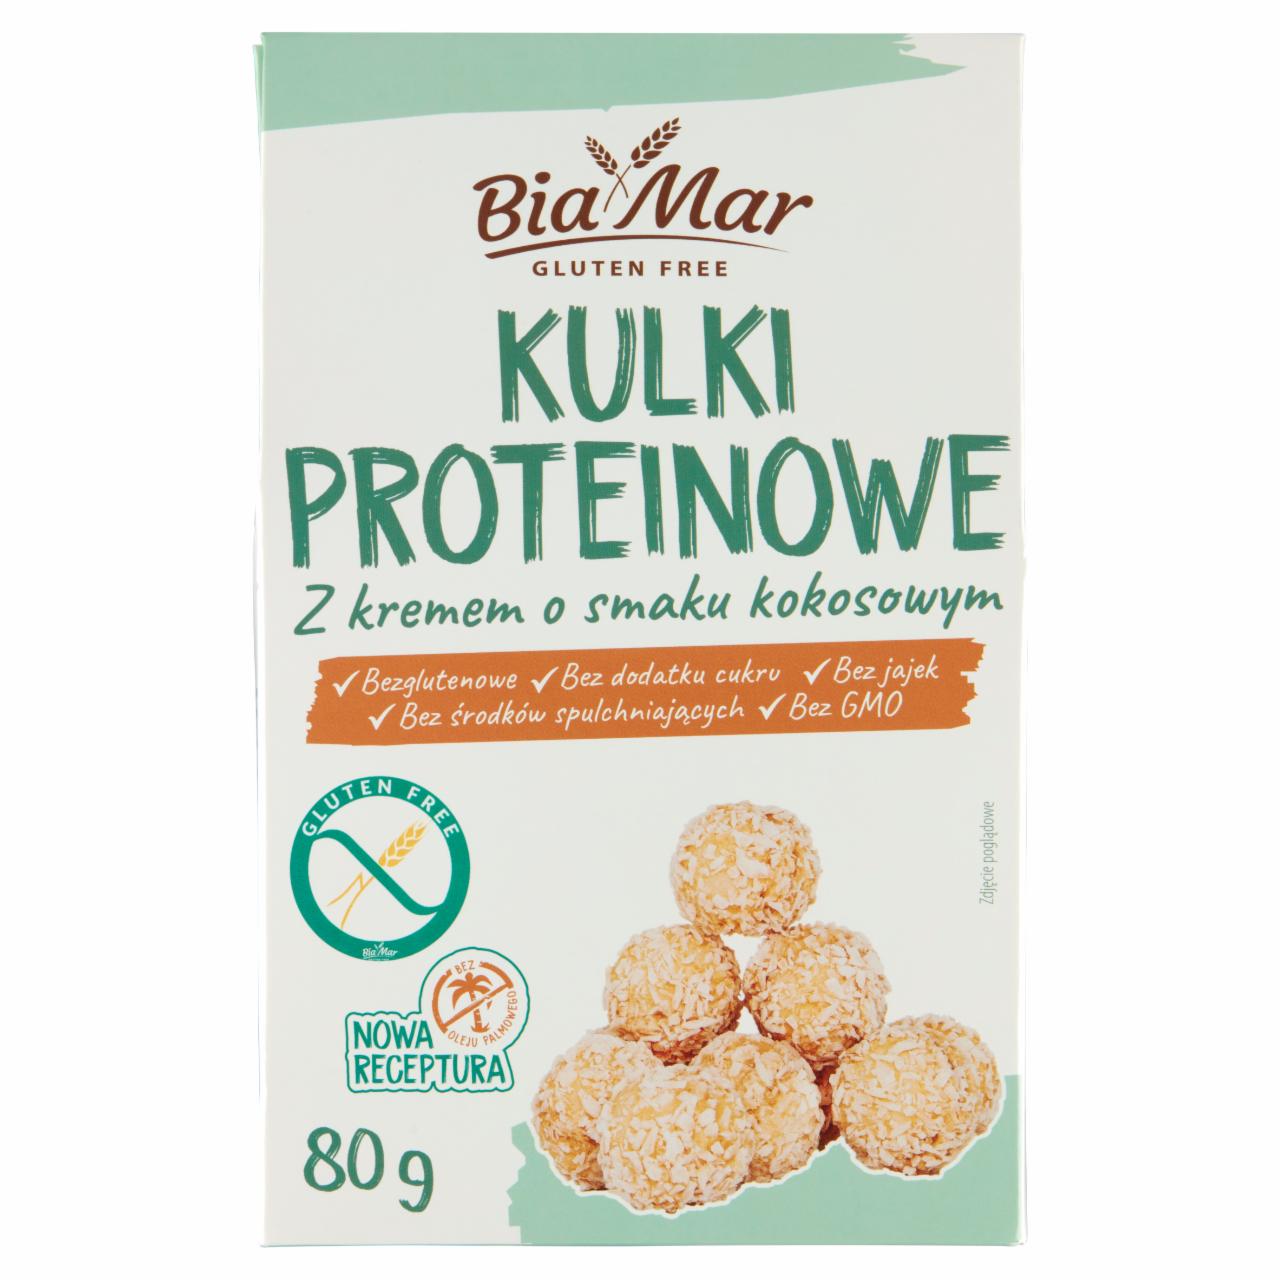 Zdjęcia - BiaMar Kulki proteinowe z kremem o smaku kokosowym 80 g